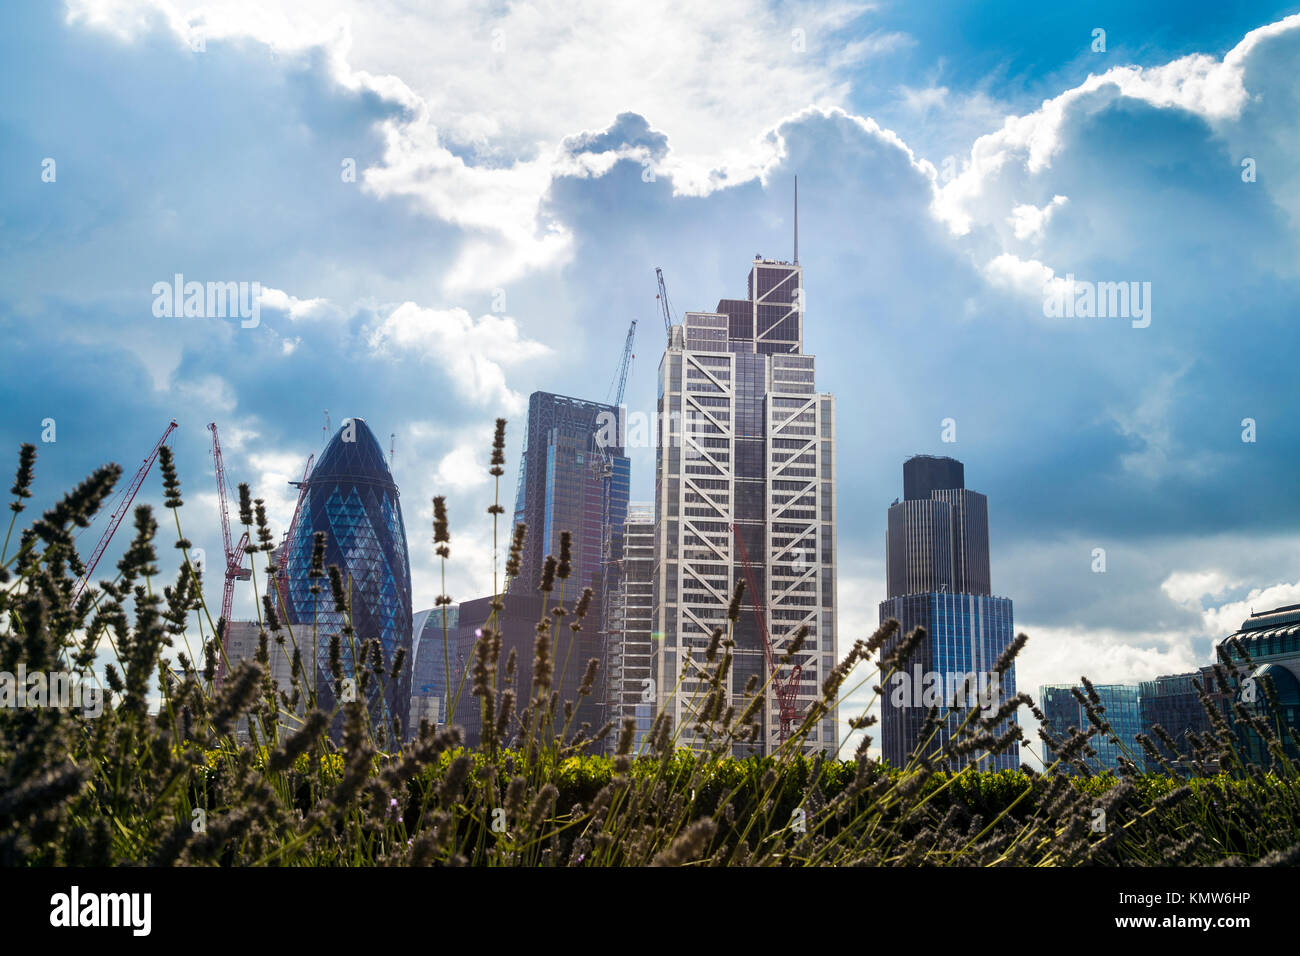 Vista della città di Londra grattacieli (Gherkin, Cheesegrater, Heron Tower, torre 42) con piante e erba in primo piano, London, Regno Unito Foto Stock